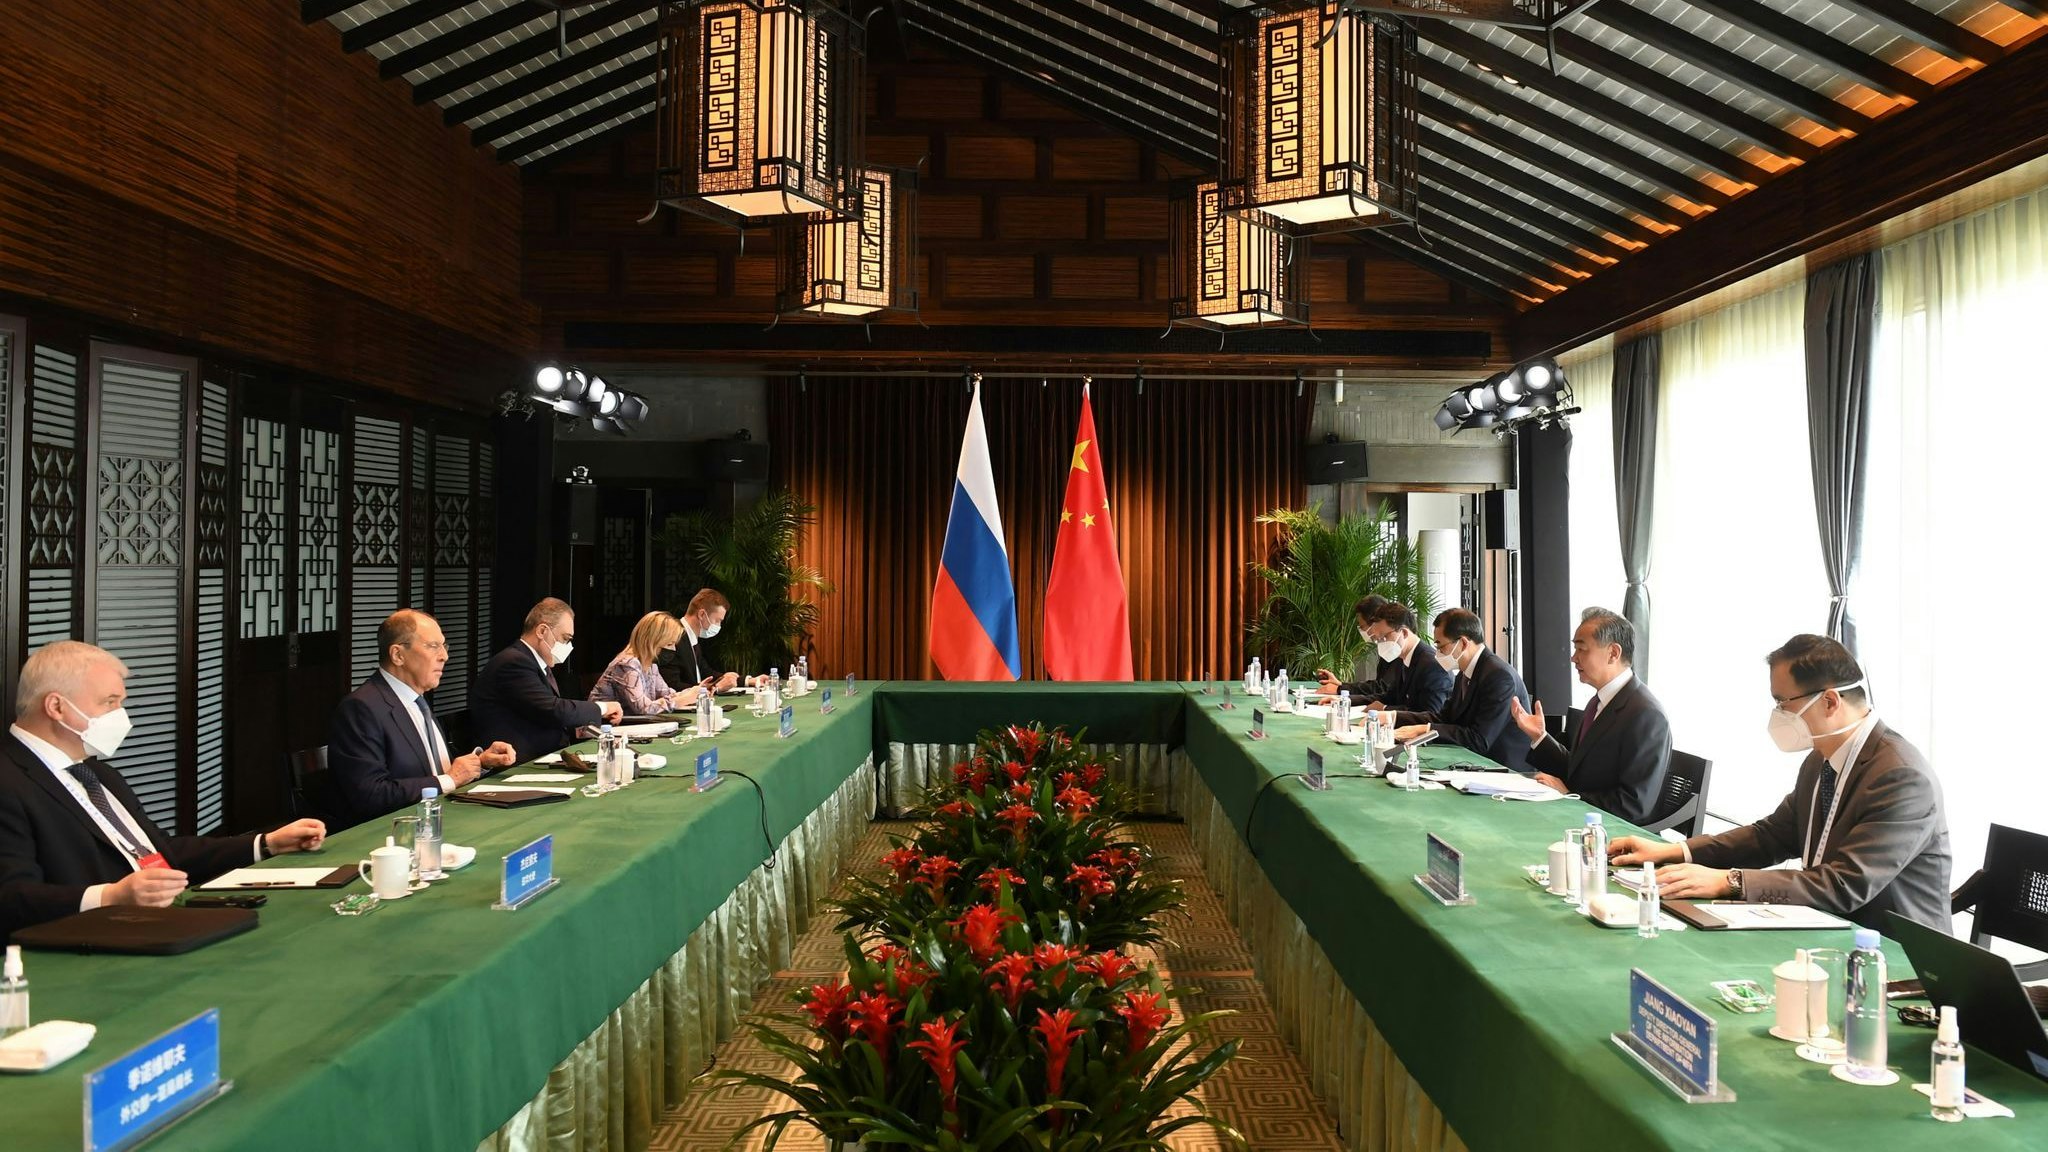 Bei einem Treffen in China vereinbarten der russische Außenminister Sergej Lawrow und sein chinesischer Kollege Wang Yi den Ausbau einer strategischen Partnerschaft in einer „schwierigen internationalen Situation“. Foto: dpa/Zhou Mu/XinHua